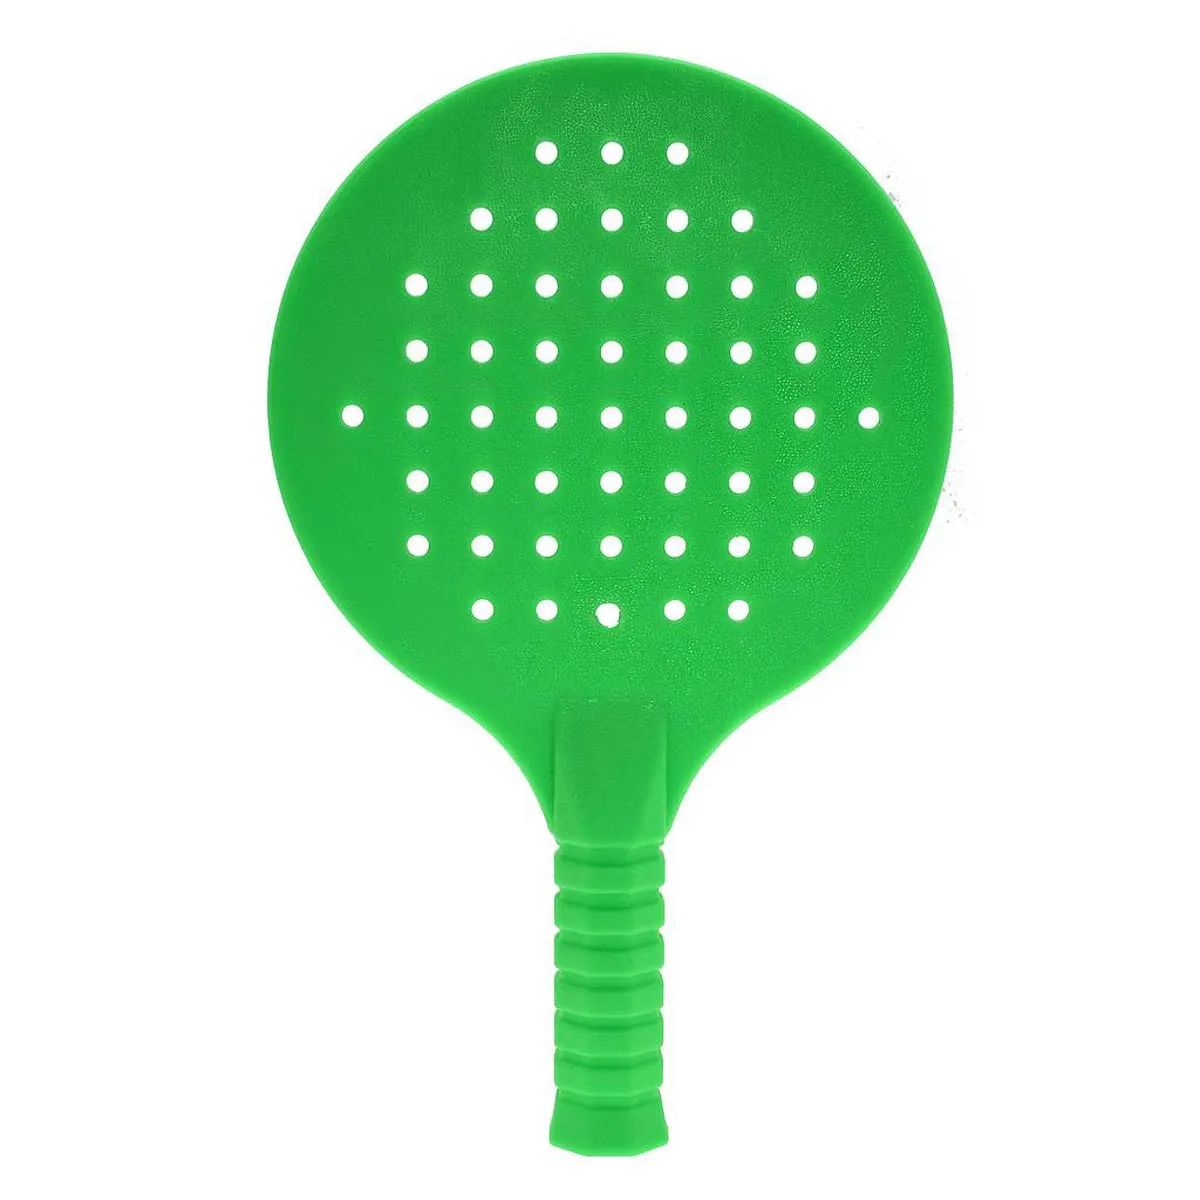 Racket Sport Toys